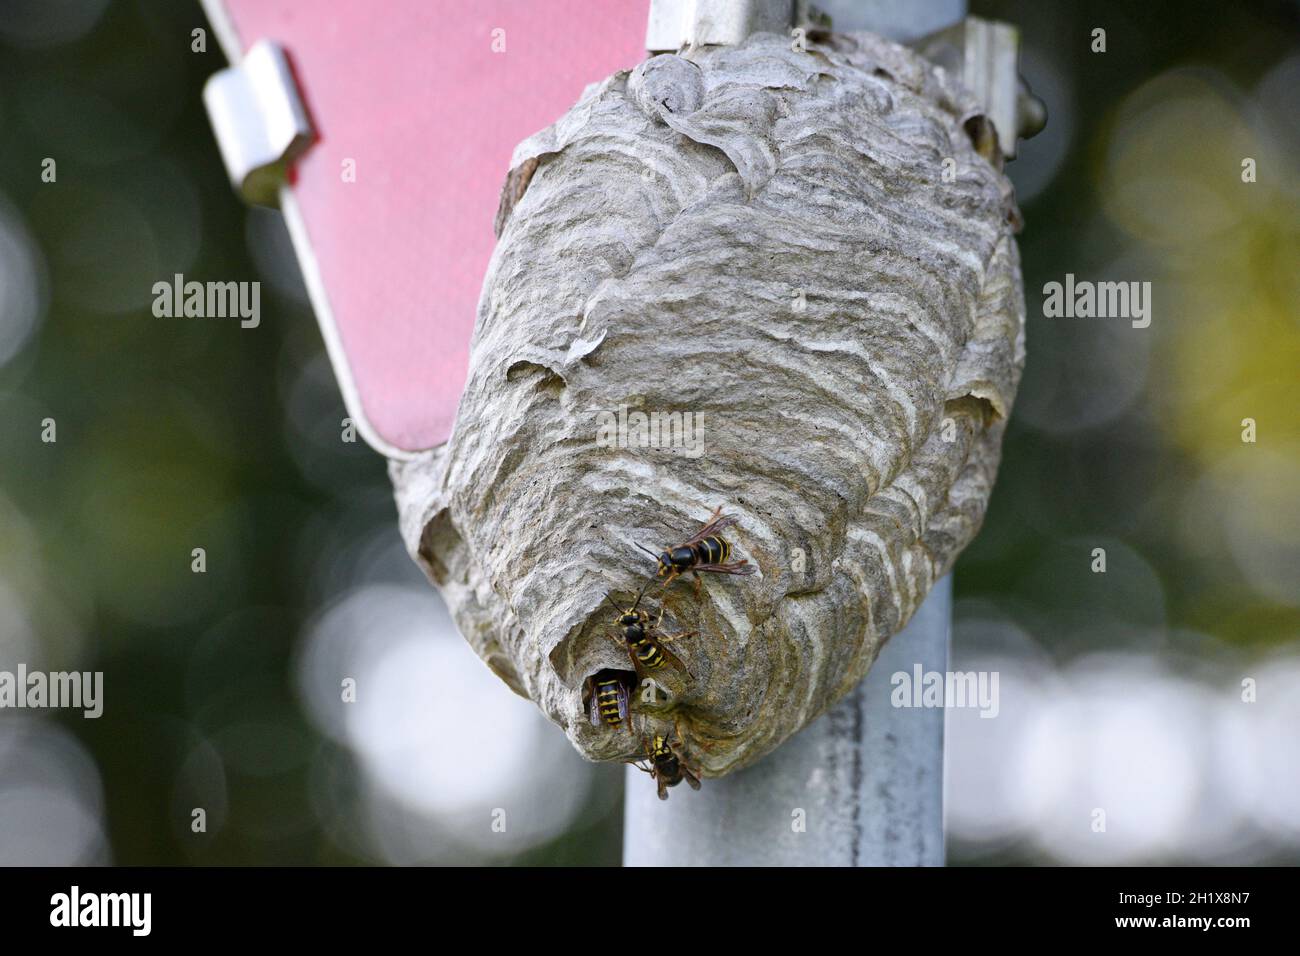 Wespennest an einem Verkehrsschild, Vorrangtafel, Österreich, Europa - Wasp nest on a traffic sign, priority board, Austria, Europe Stock Photo